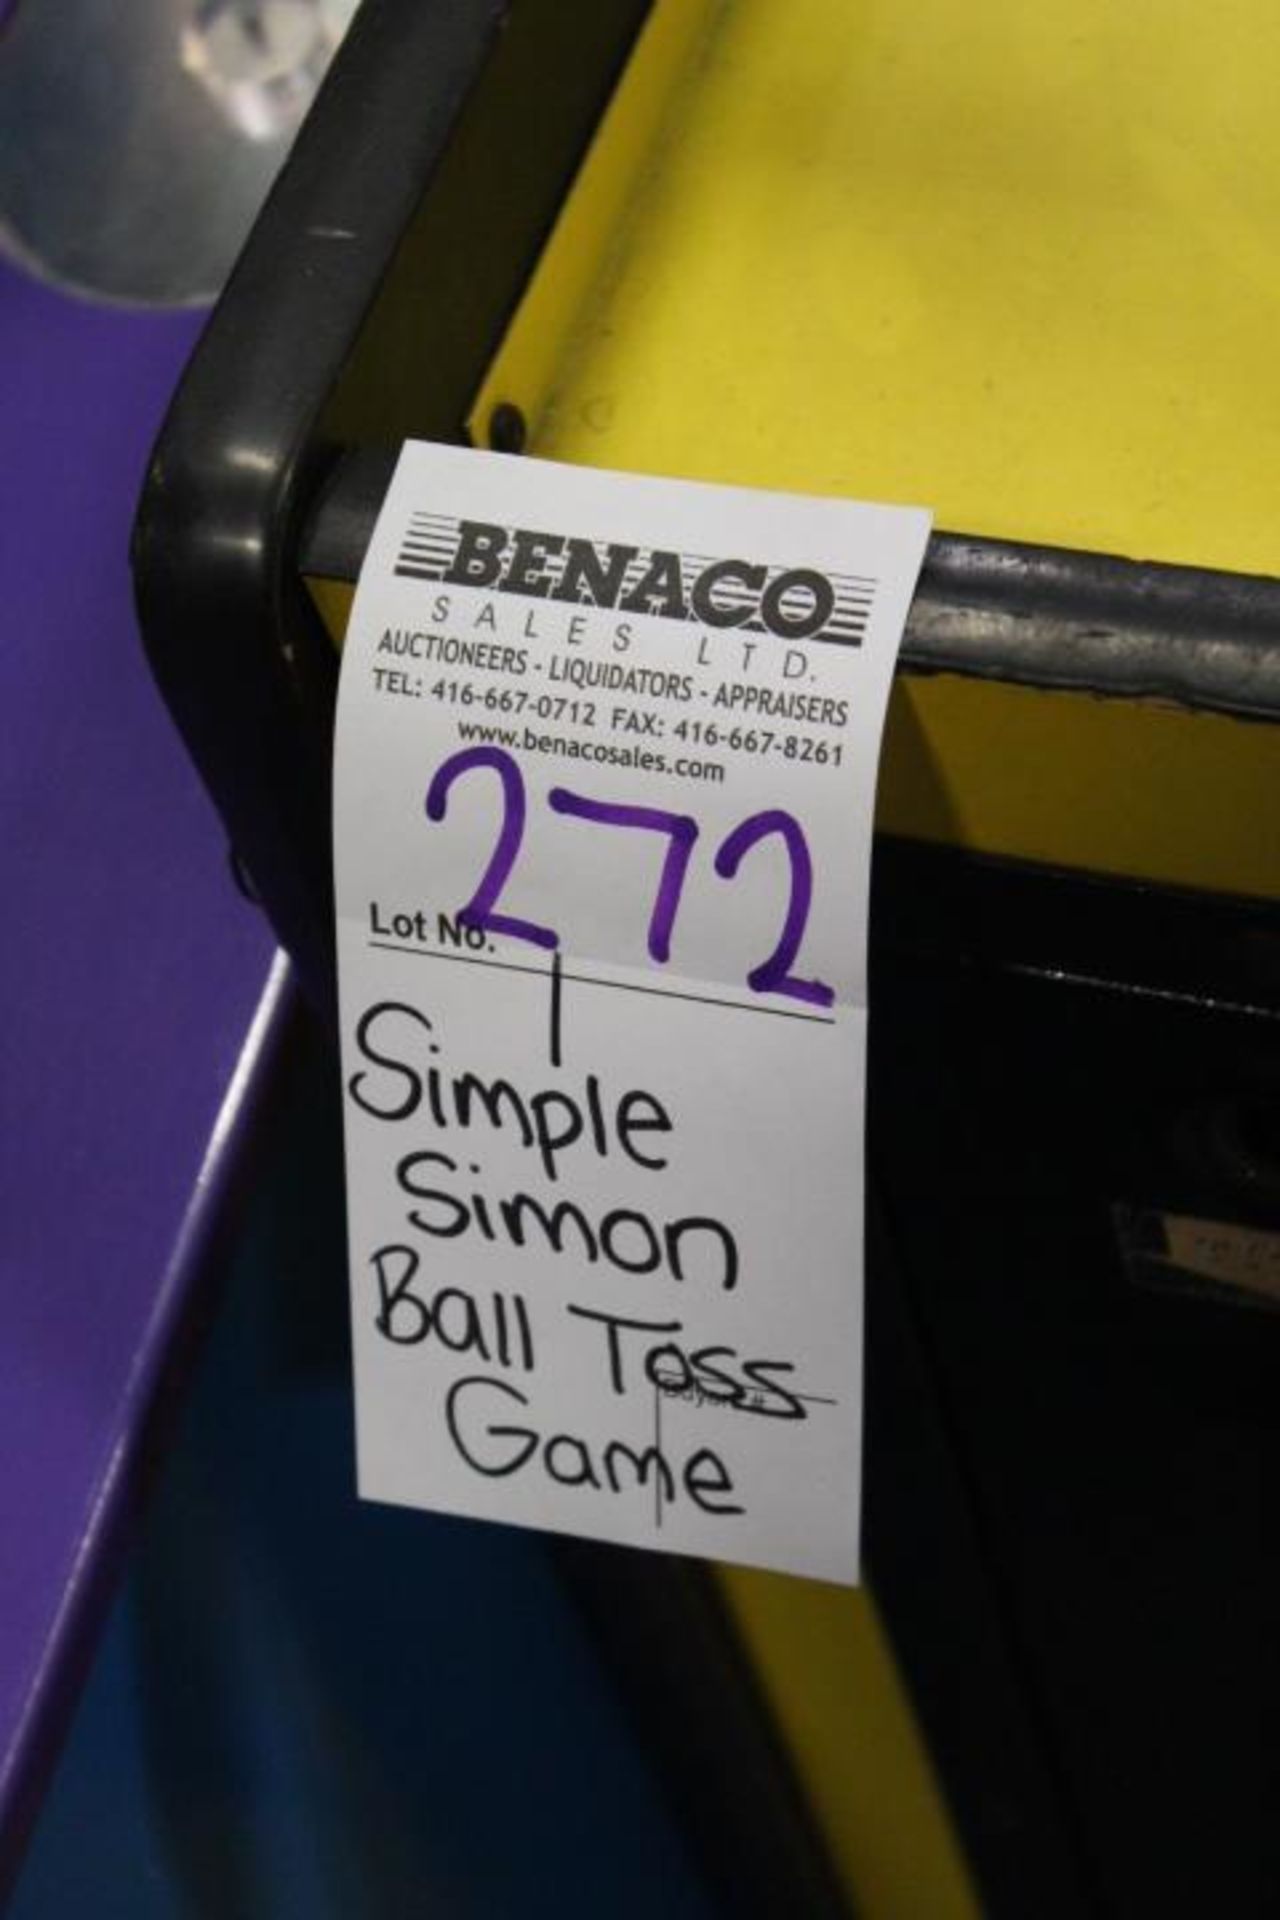 1X, SIMPLE SIMON BALL TOSS GAME - Image 6 of 6